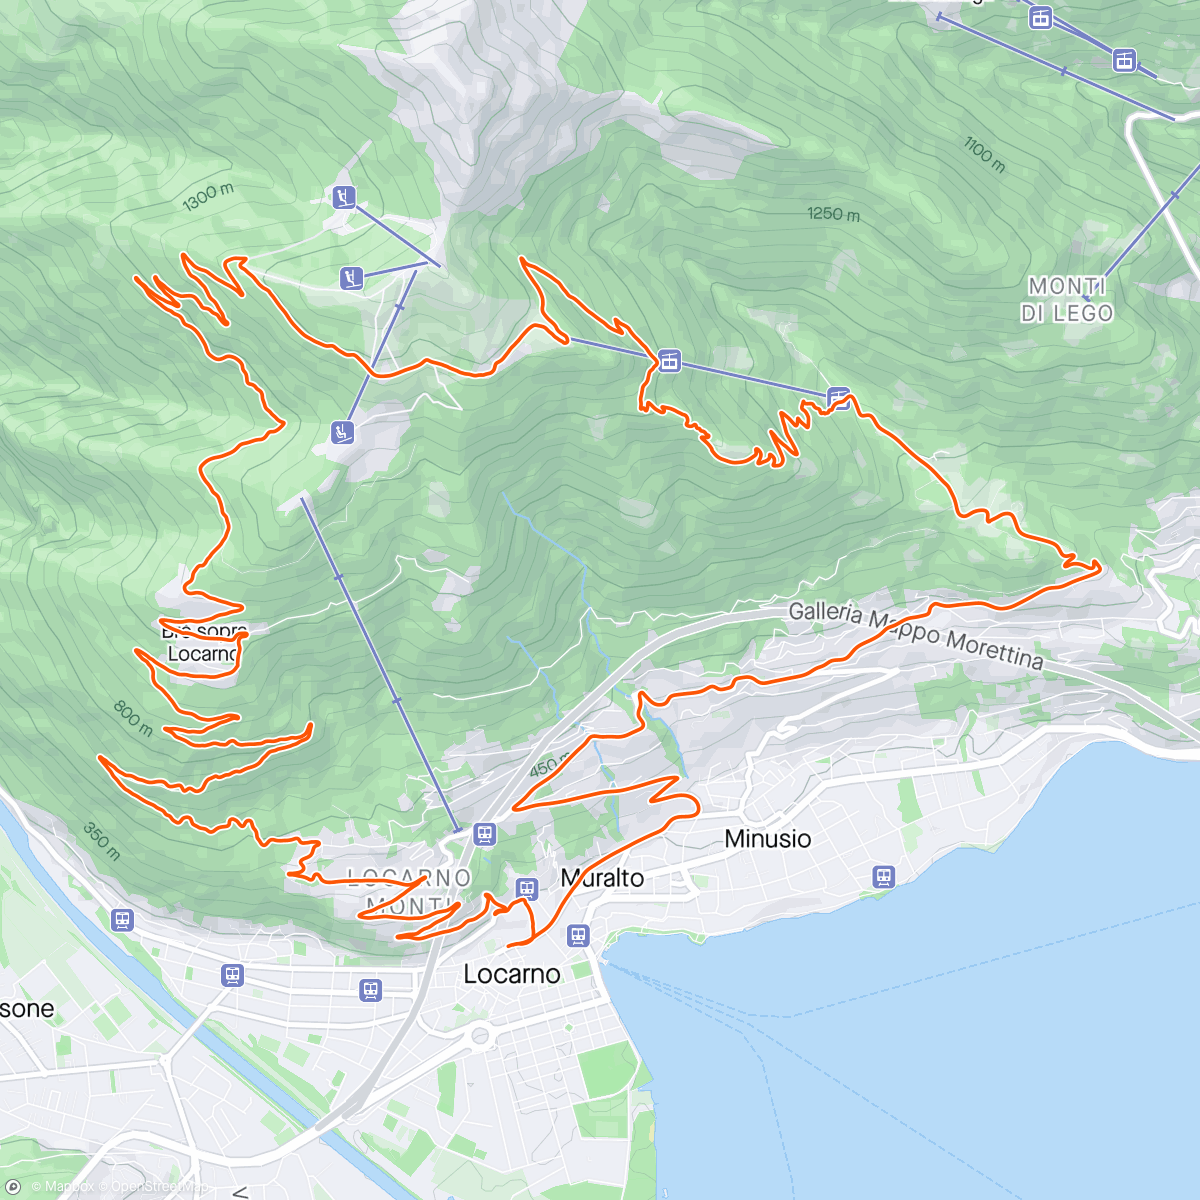 「Locarno - Cardada Trail 😍」活動的地圖